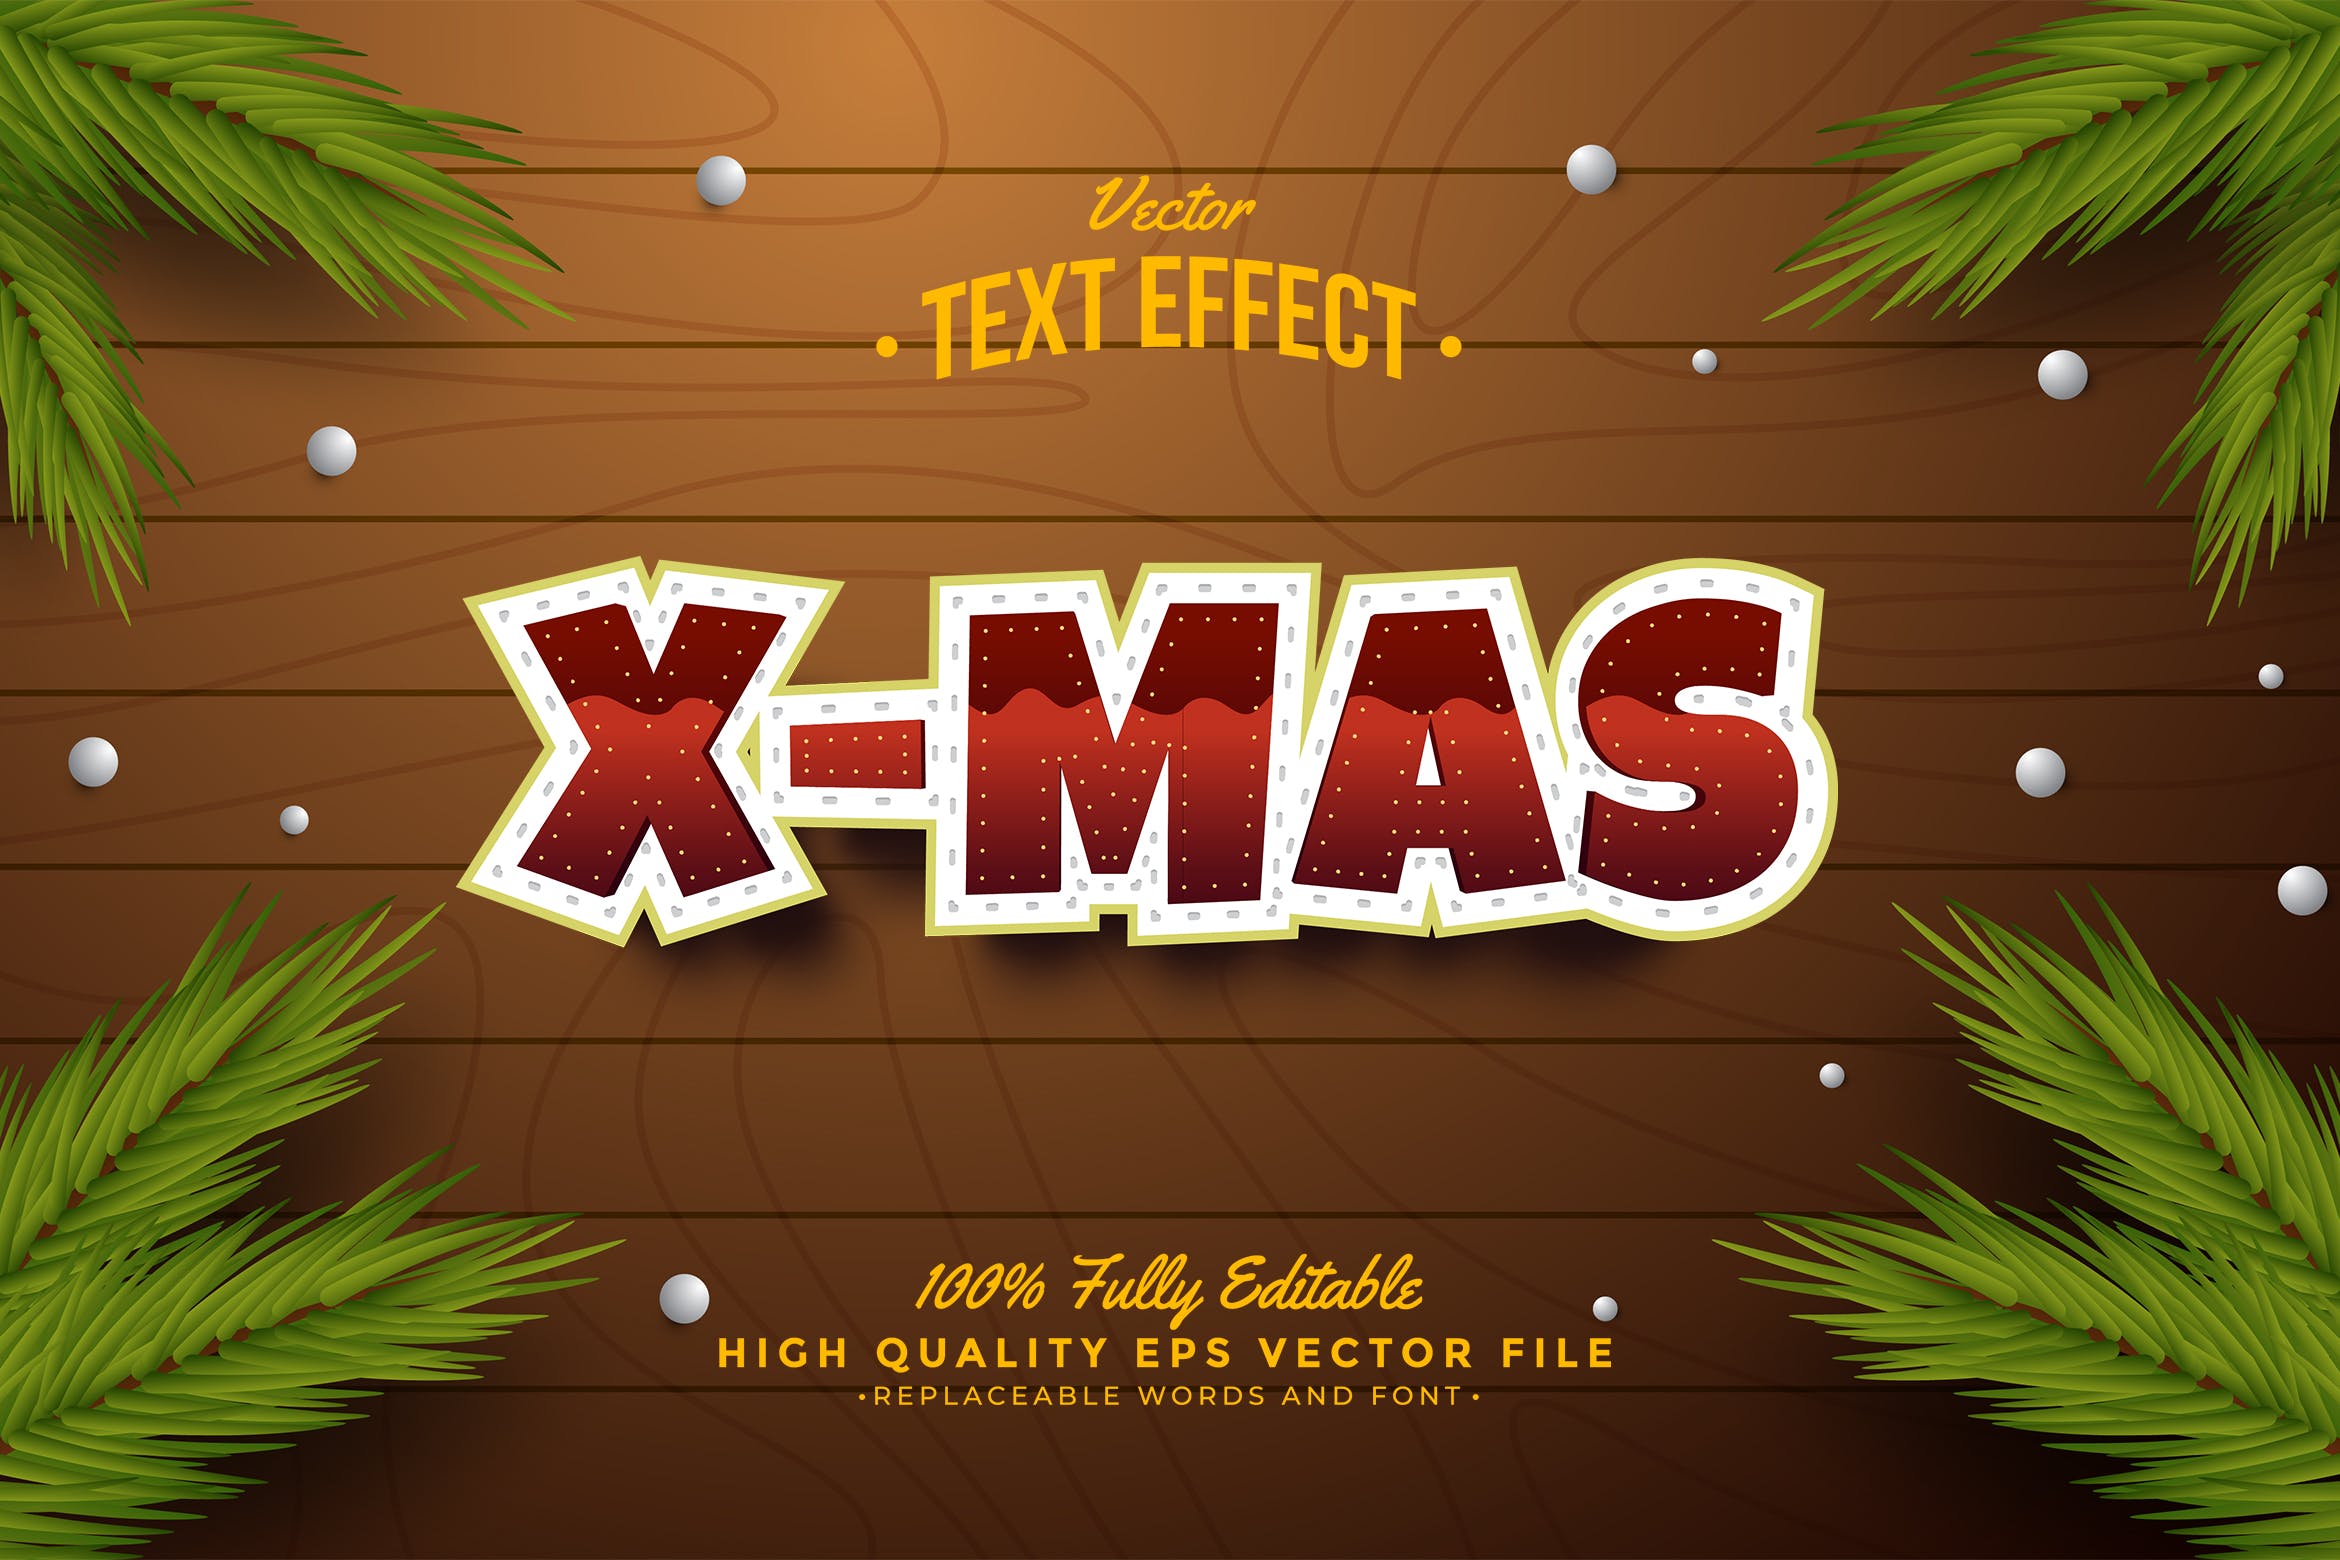 圣诞节矢量文字效果 Christmas Text Effect 插件预设 第1张